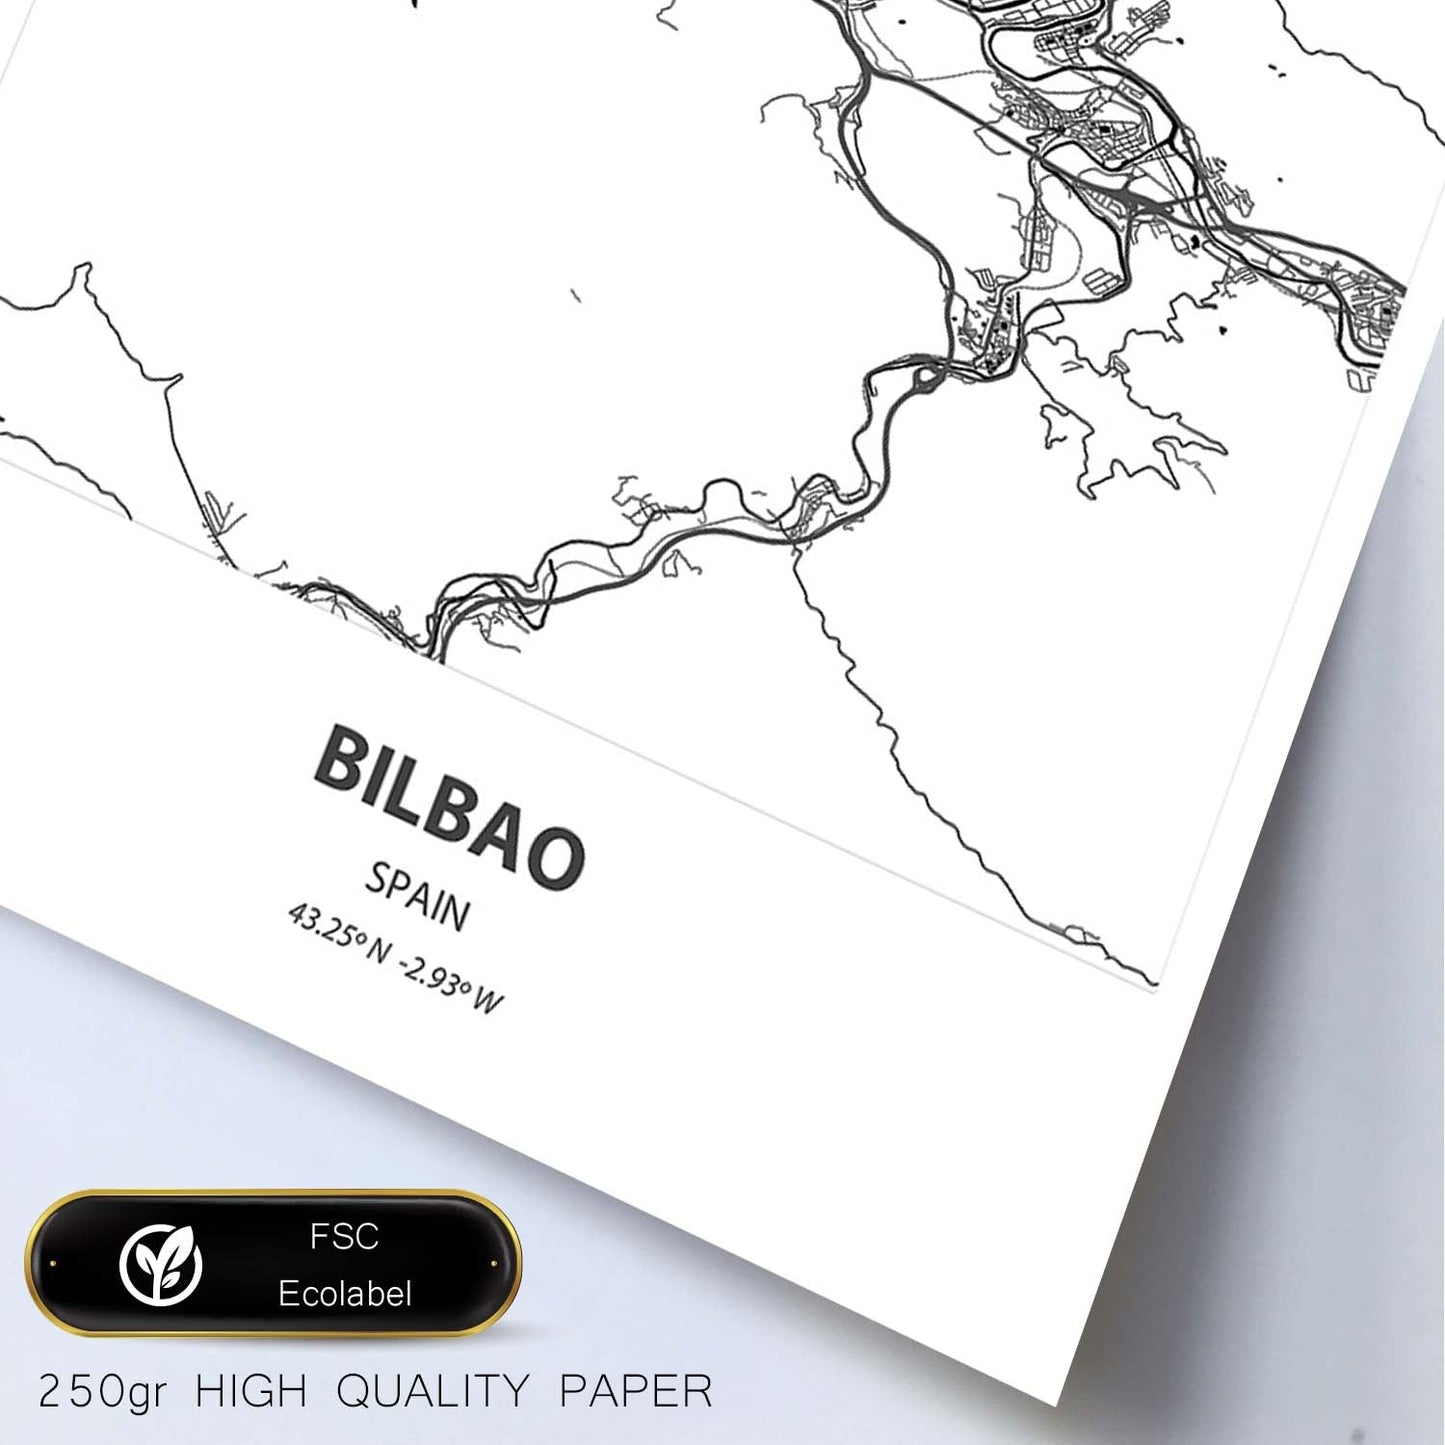 Poster con mapa de Bilbao - España. Láminas de ciudades de España con mares y ríos en color negro.-Artwork-Nacnic-Nacnic Estudio SL